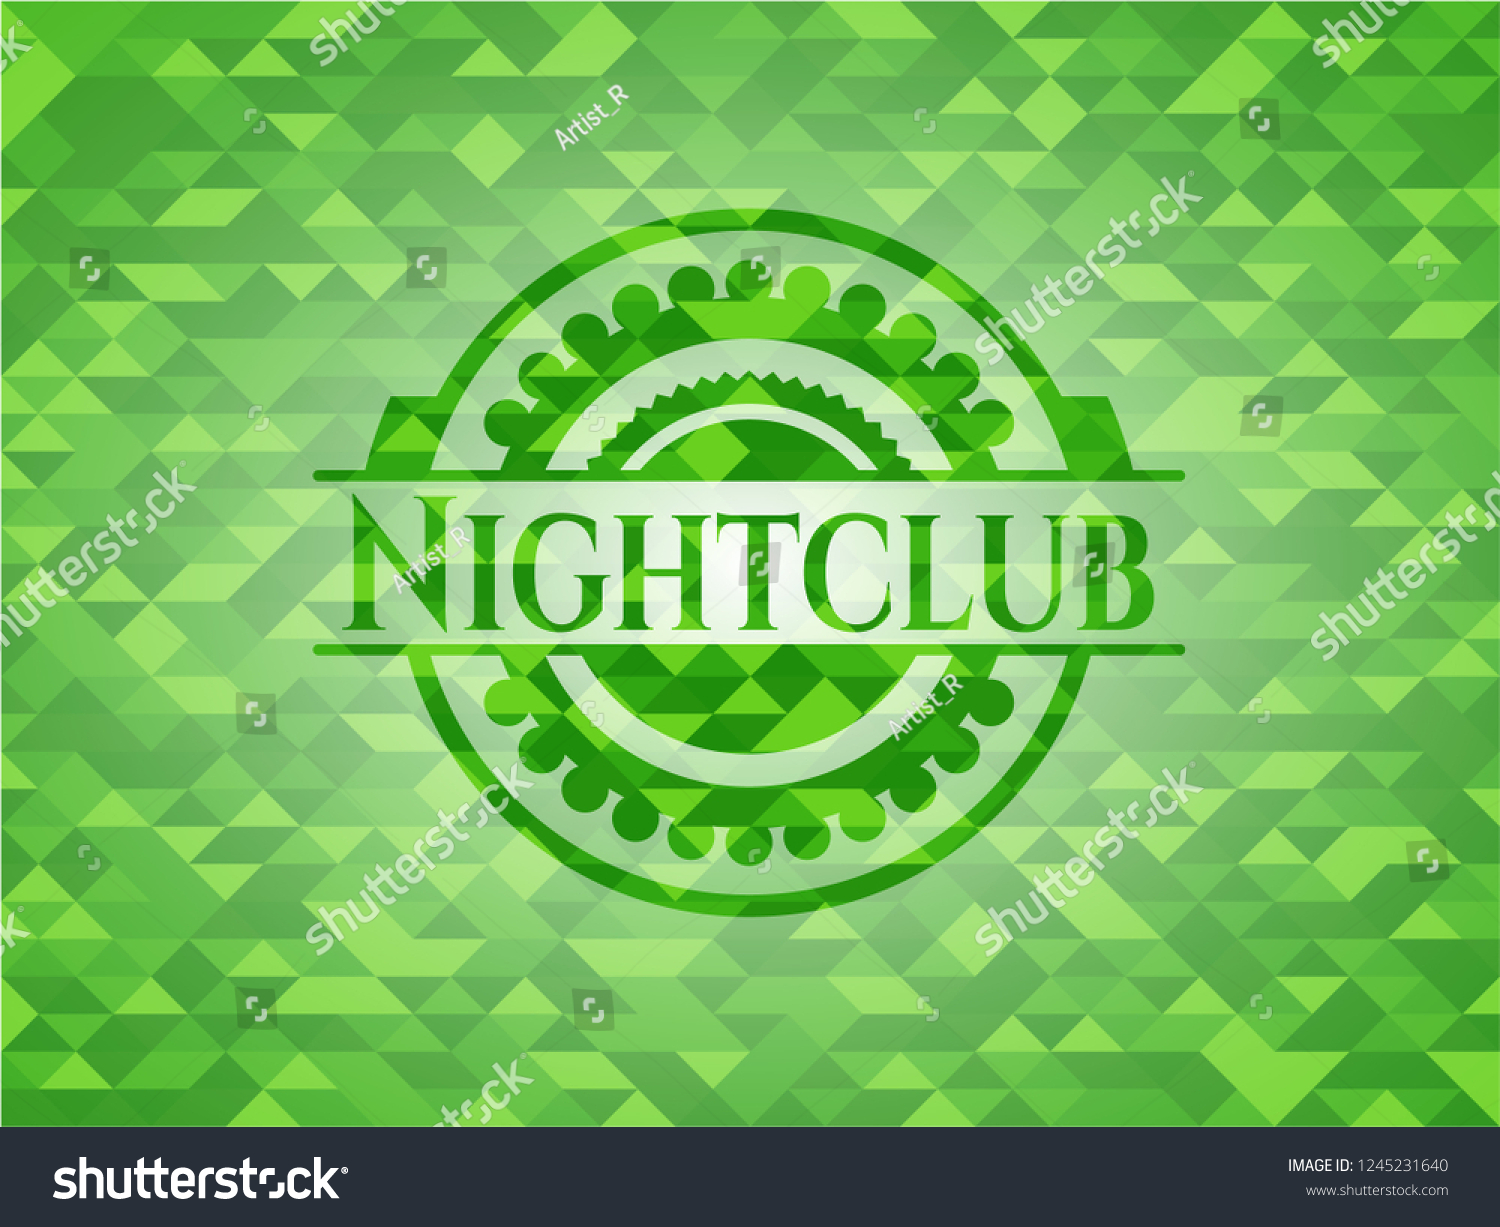 Nightclub realistic green emblem. Mosaic background #1245231640